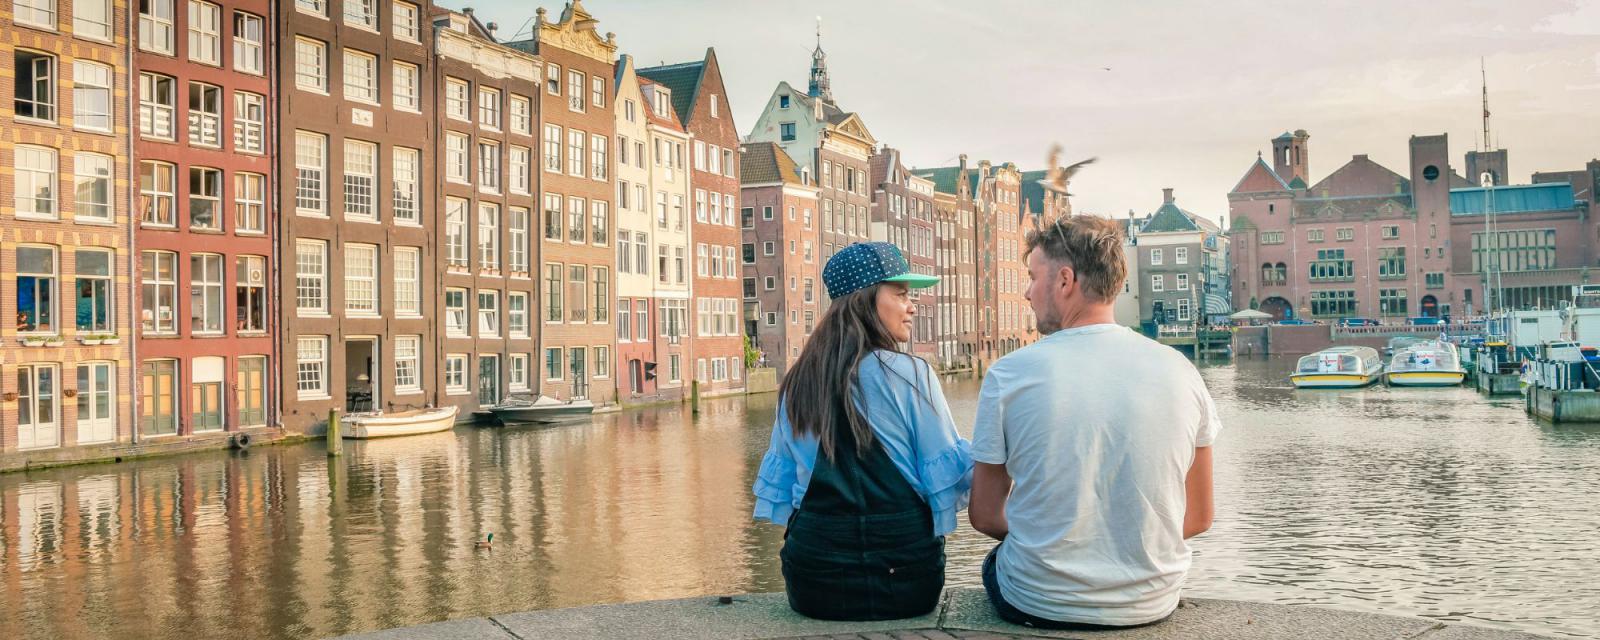 Ga op stedentrip met je geliefde in Nederland 